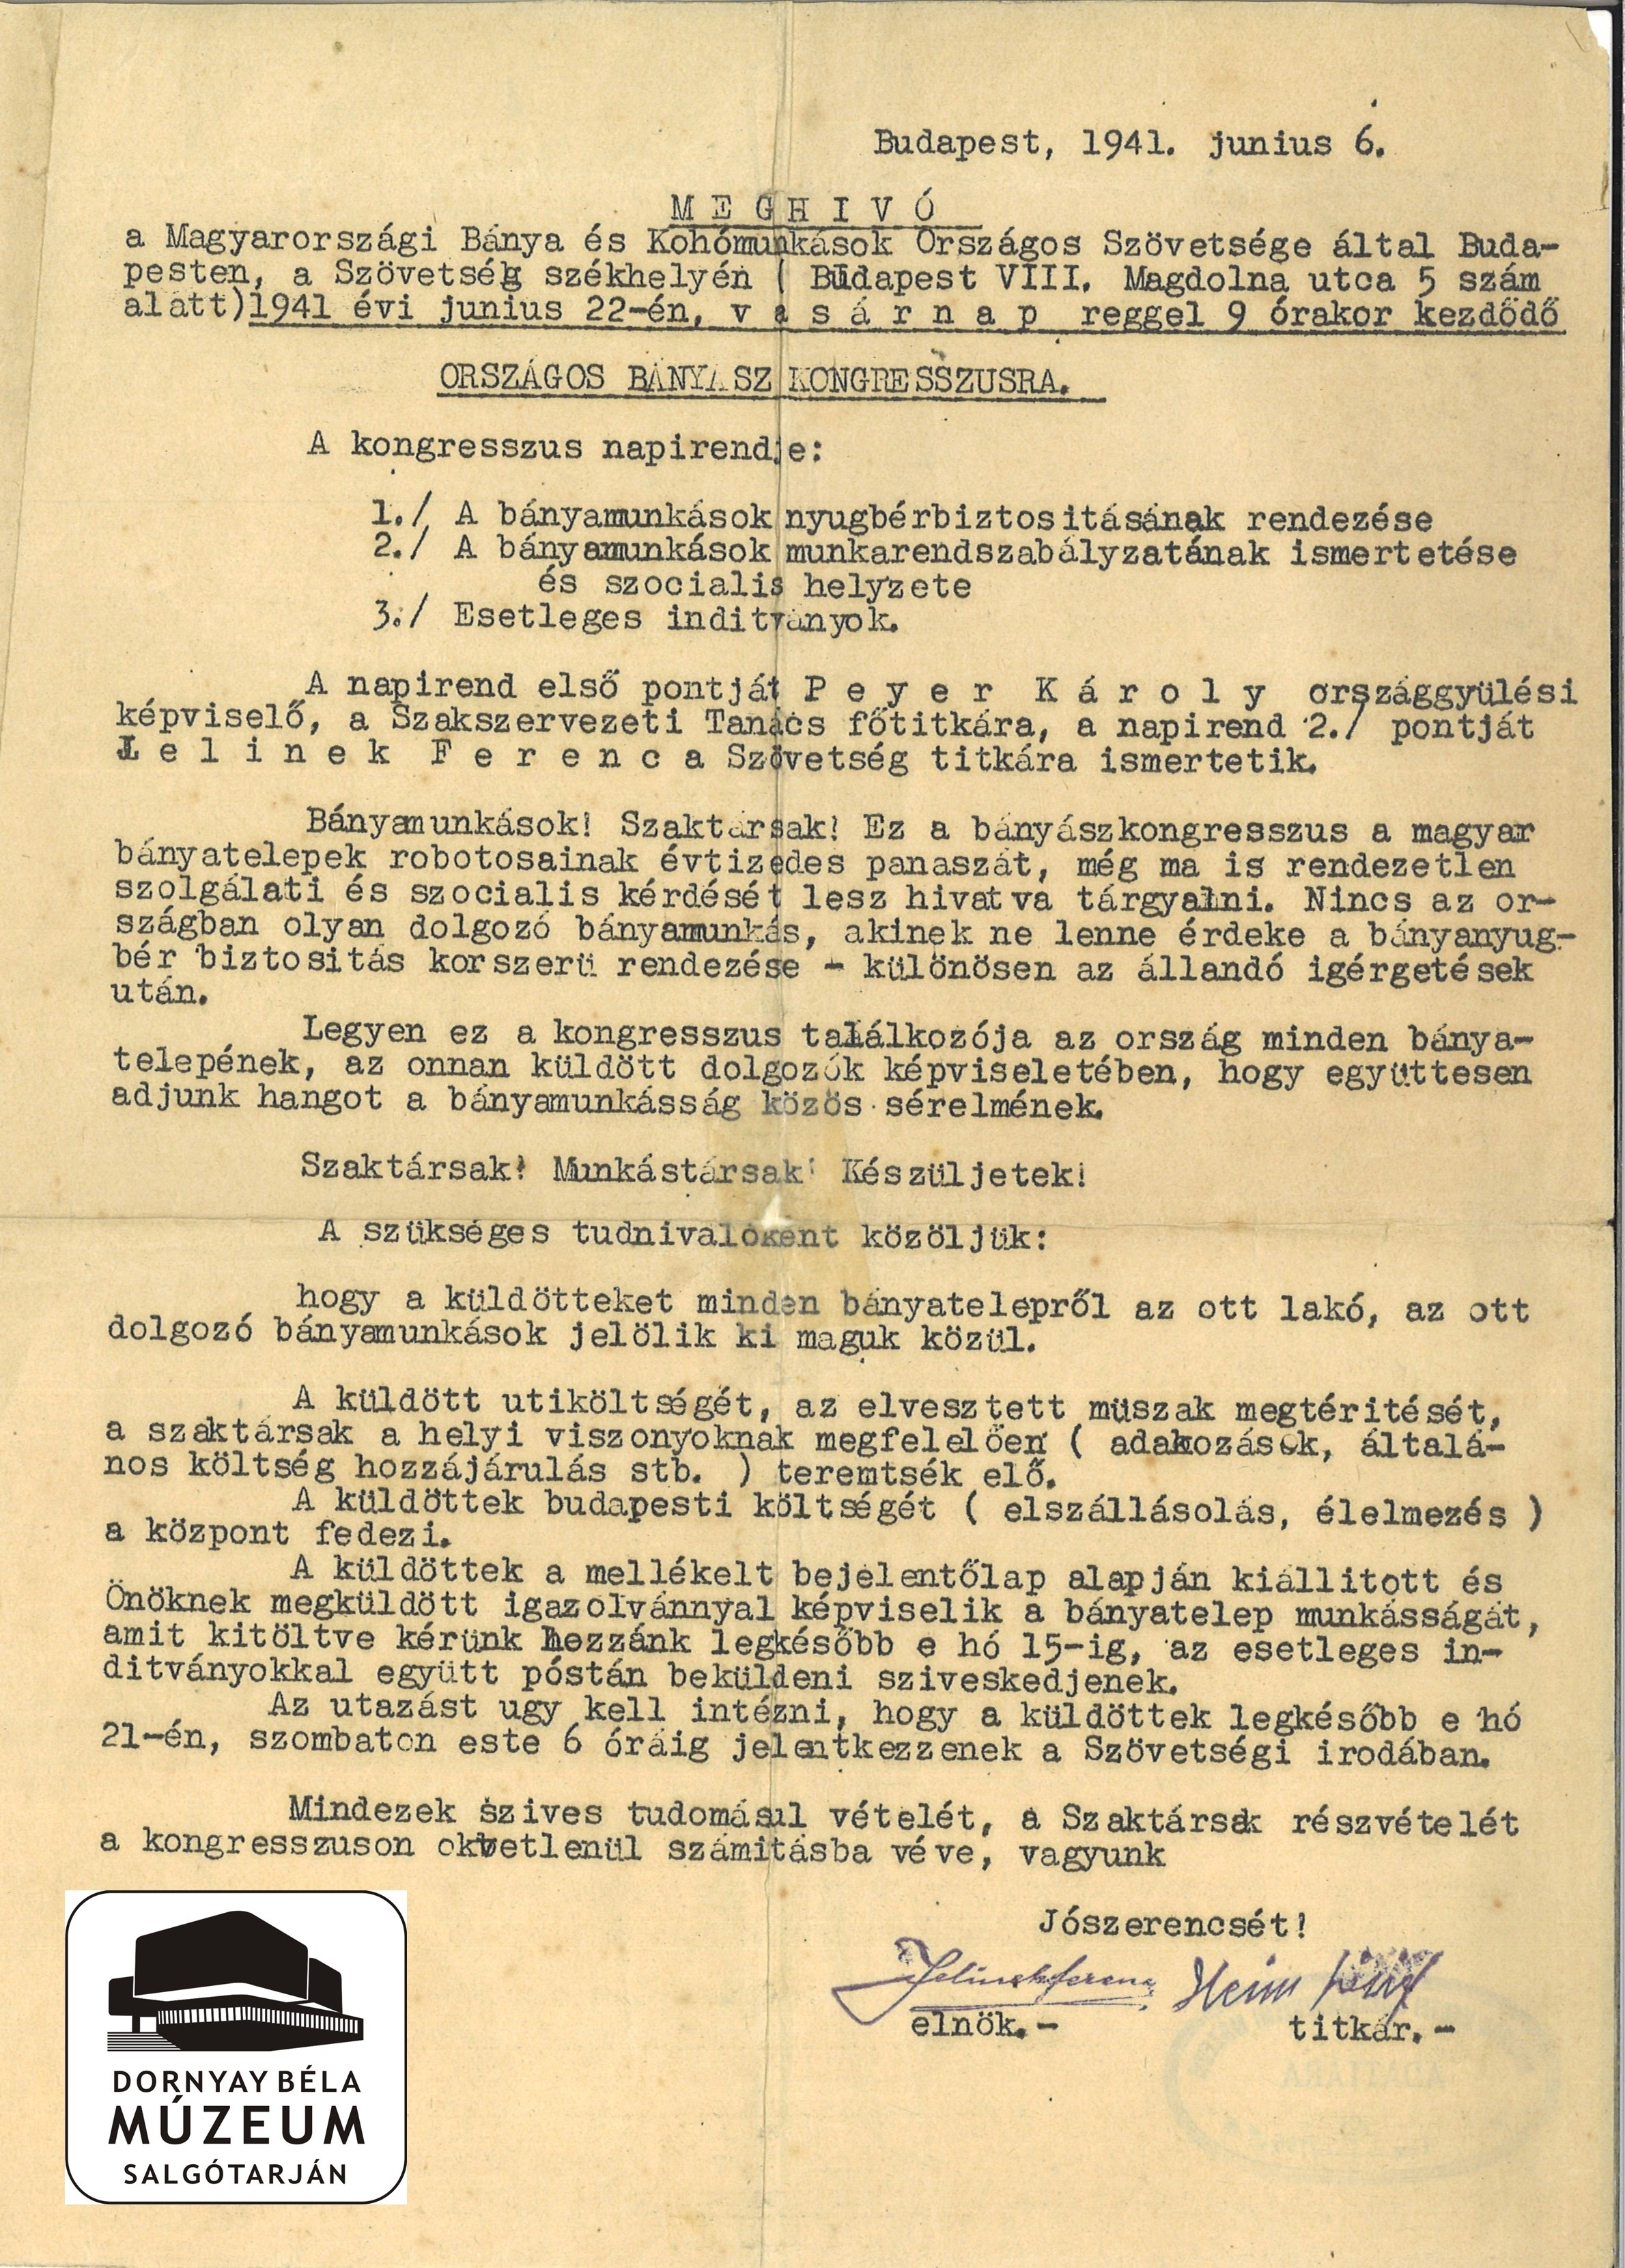 A Magyarországi Bánya és - Kohómunkások Országos Szövetsége, Bp meghívó 1941.VI.22-i országos bányászkongresszusra (Dornyay Béla Múzeum, Salgótarján CC BY-NC-SA)